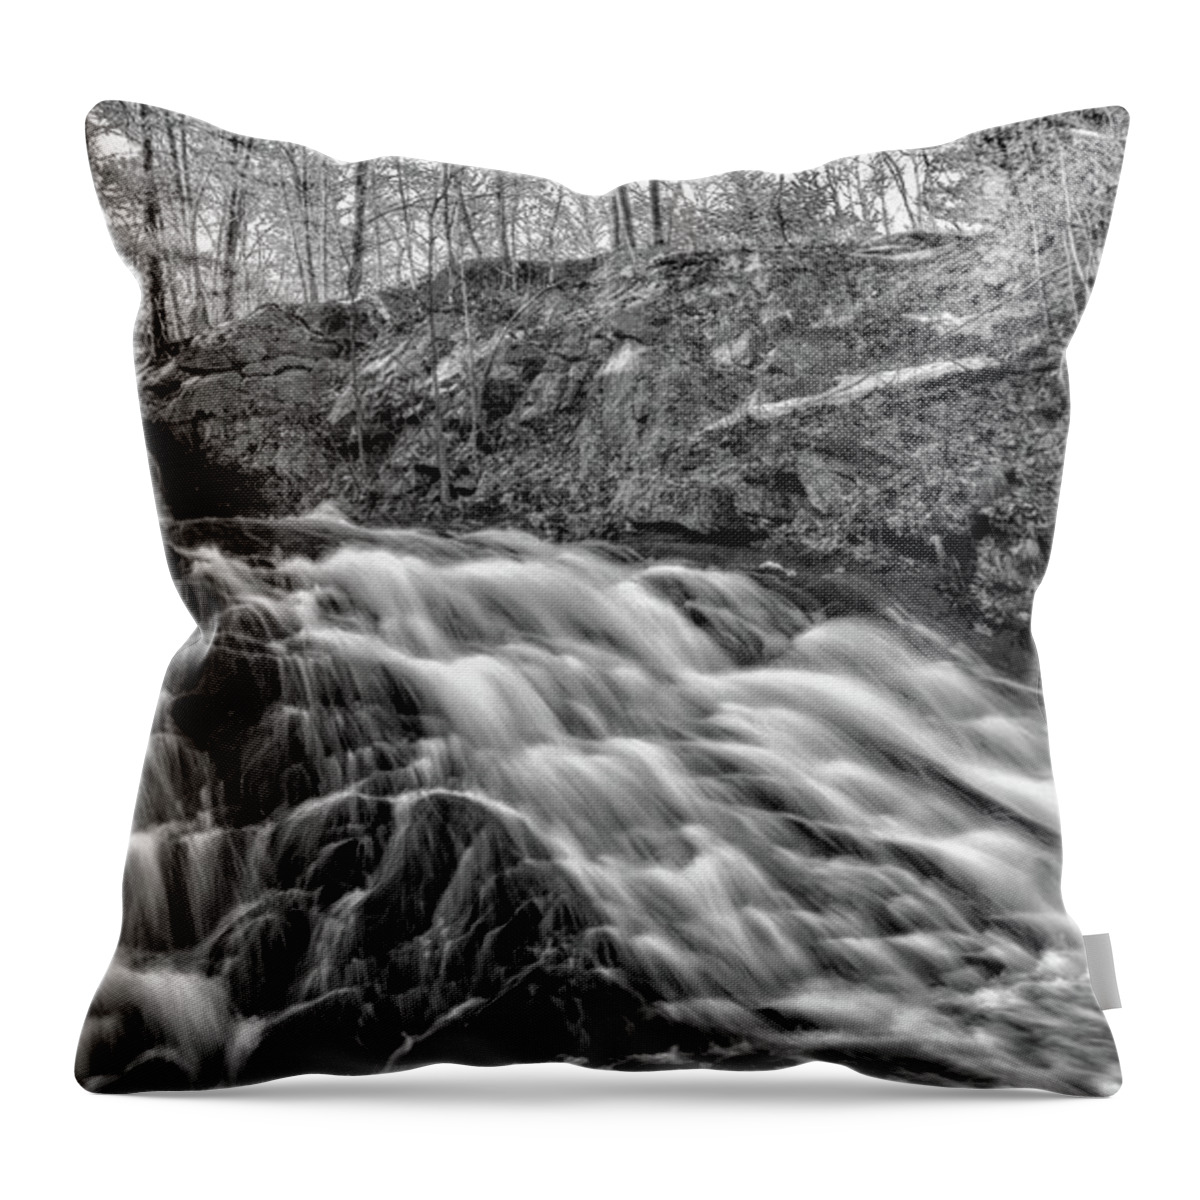 Falls Throw Pillow featuring the photograph Hidden Gem by Richard Bean